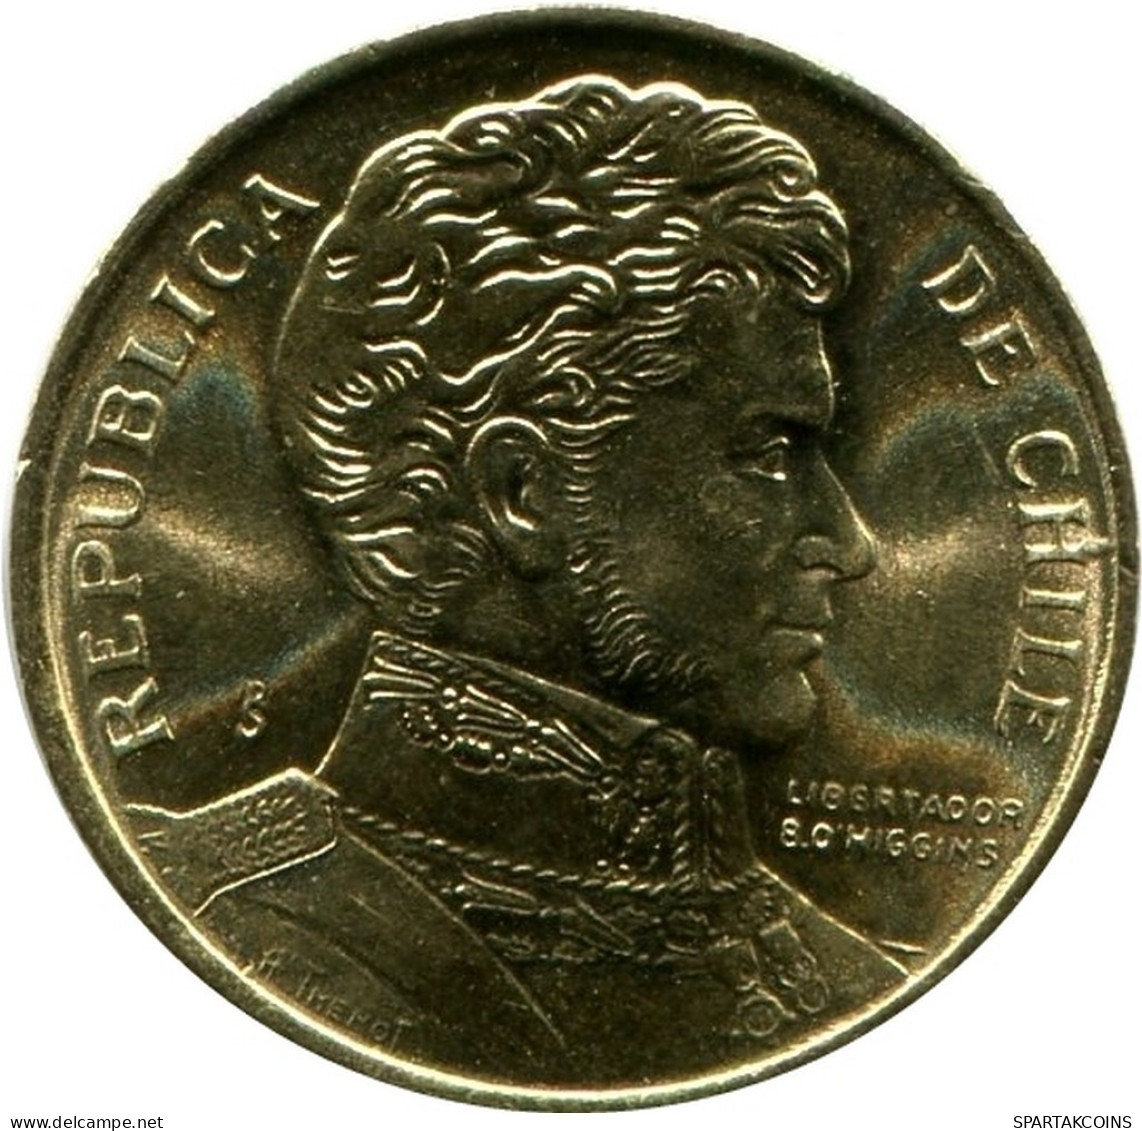 1 PESO 1990 CHILE UNC Coin #M10122.U.A - Cile